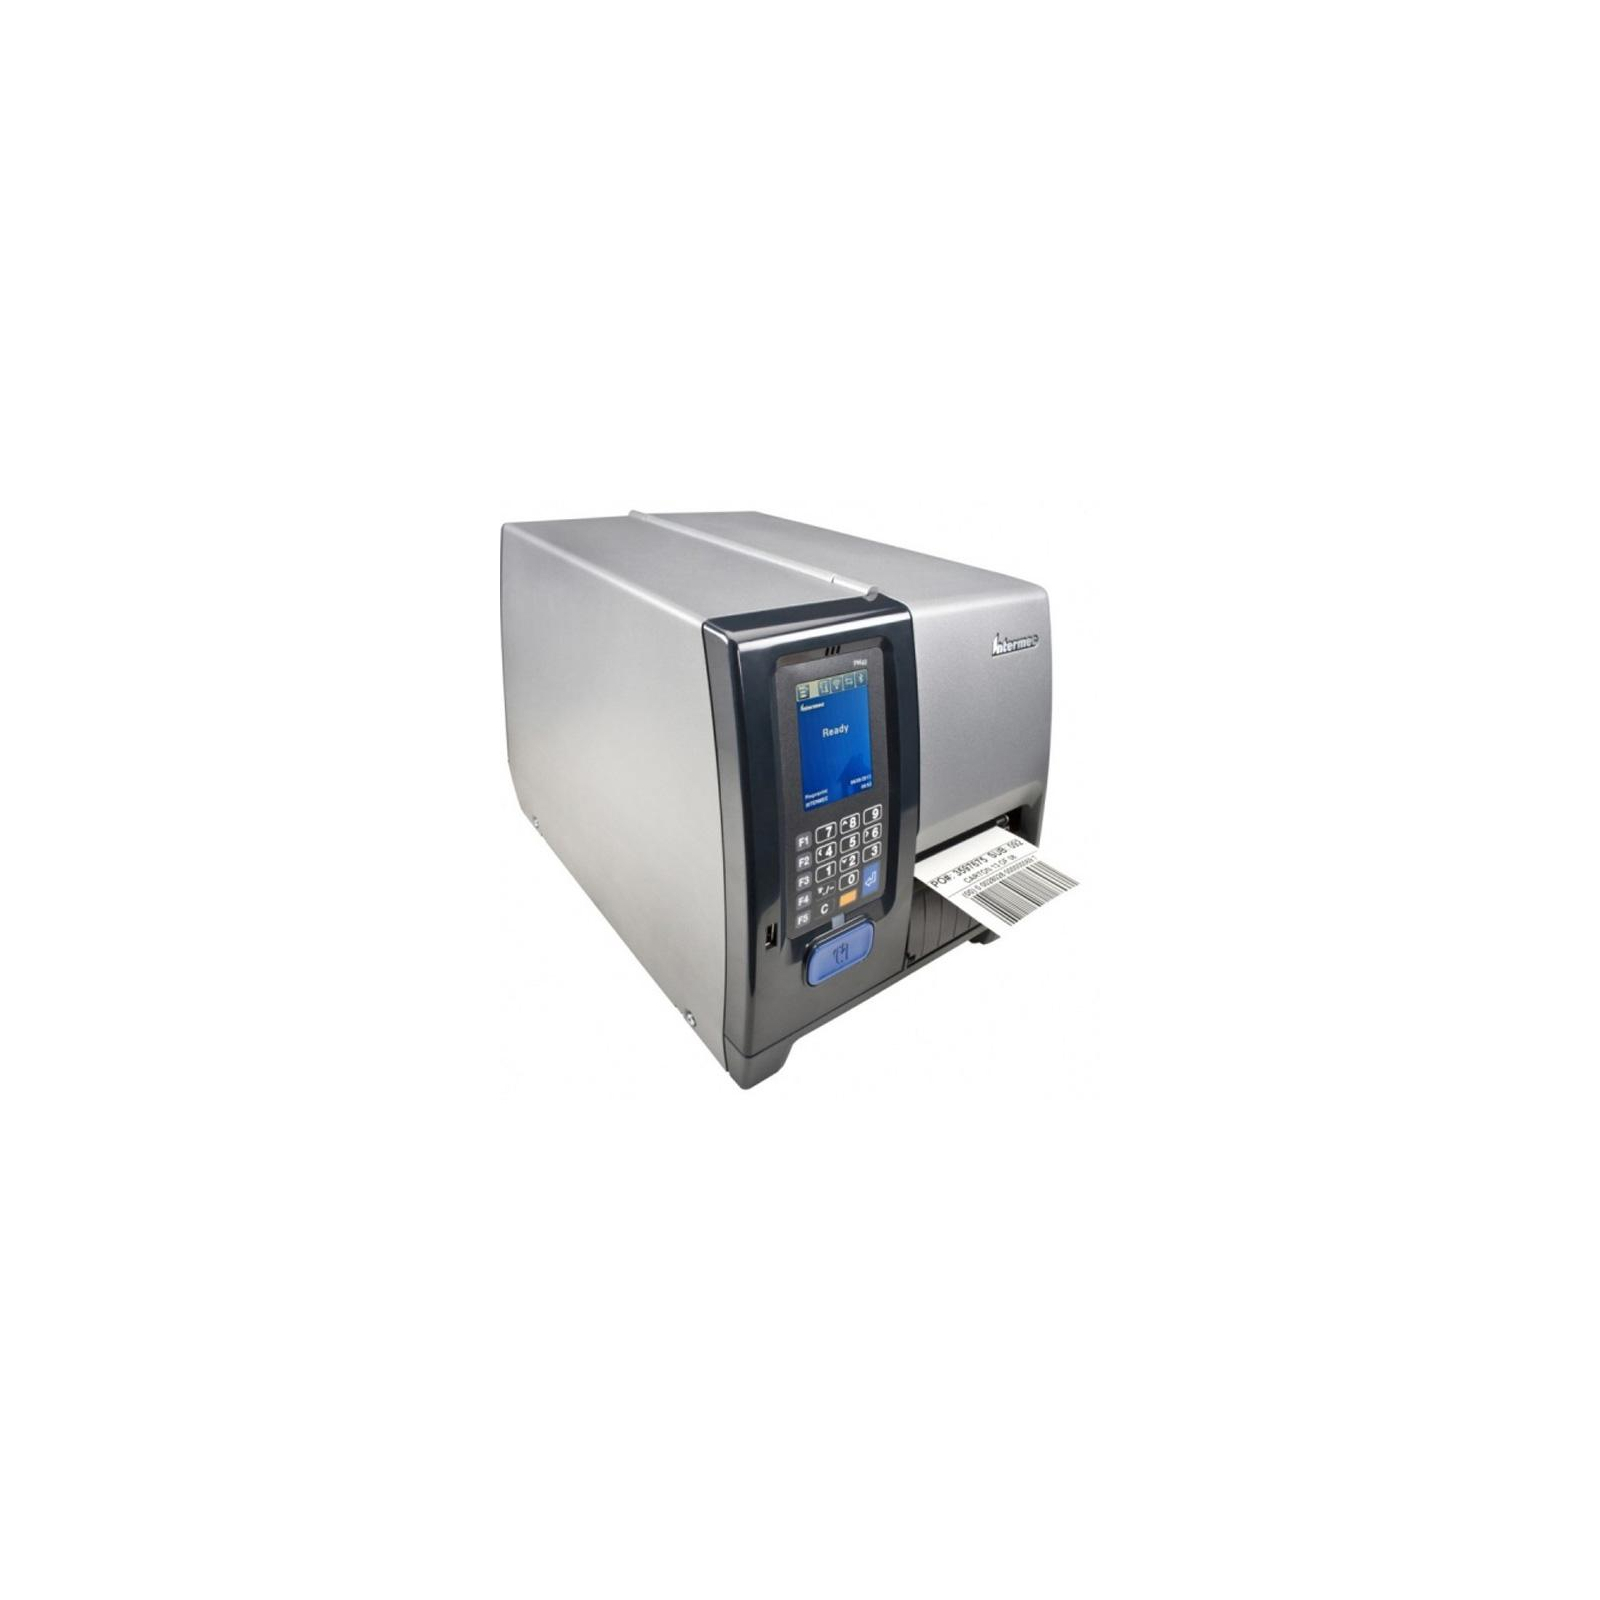 Принтер этикеток Honeywell PM43A TT, 203dpi, USB+Ethernet (PM43A11000000202) изображение 2